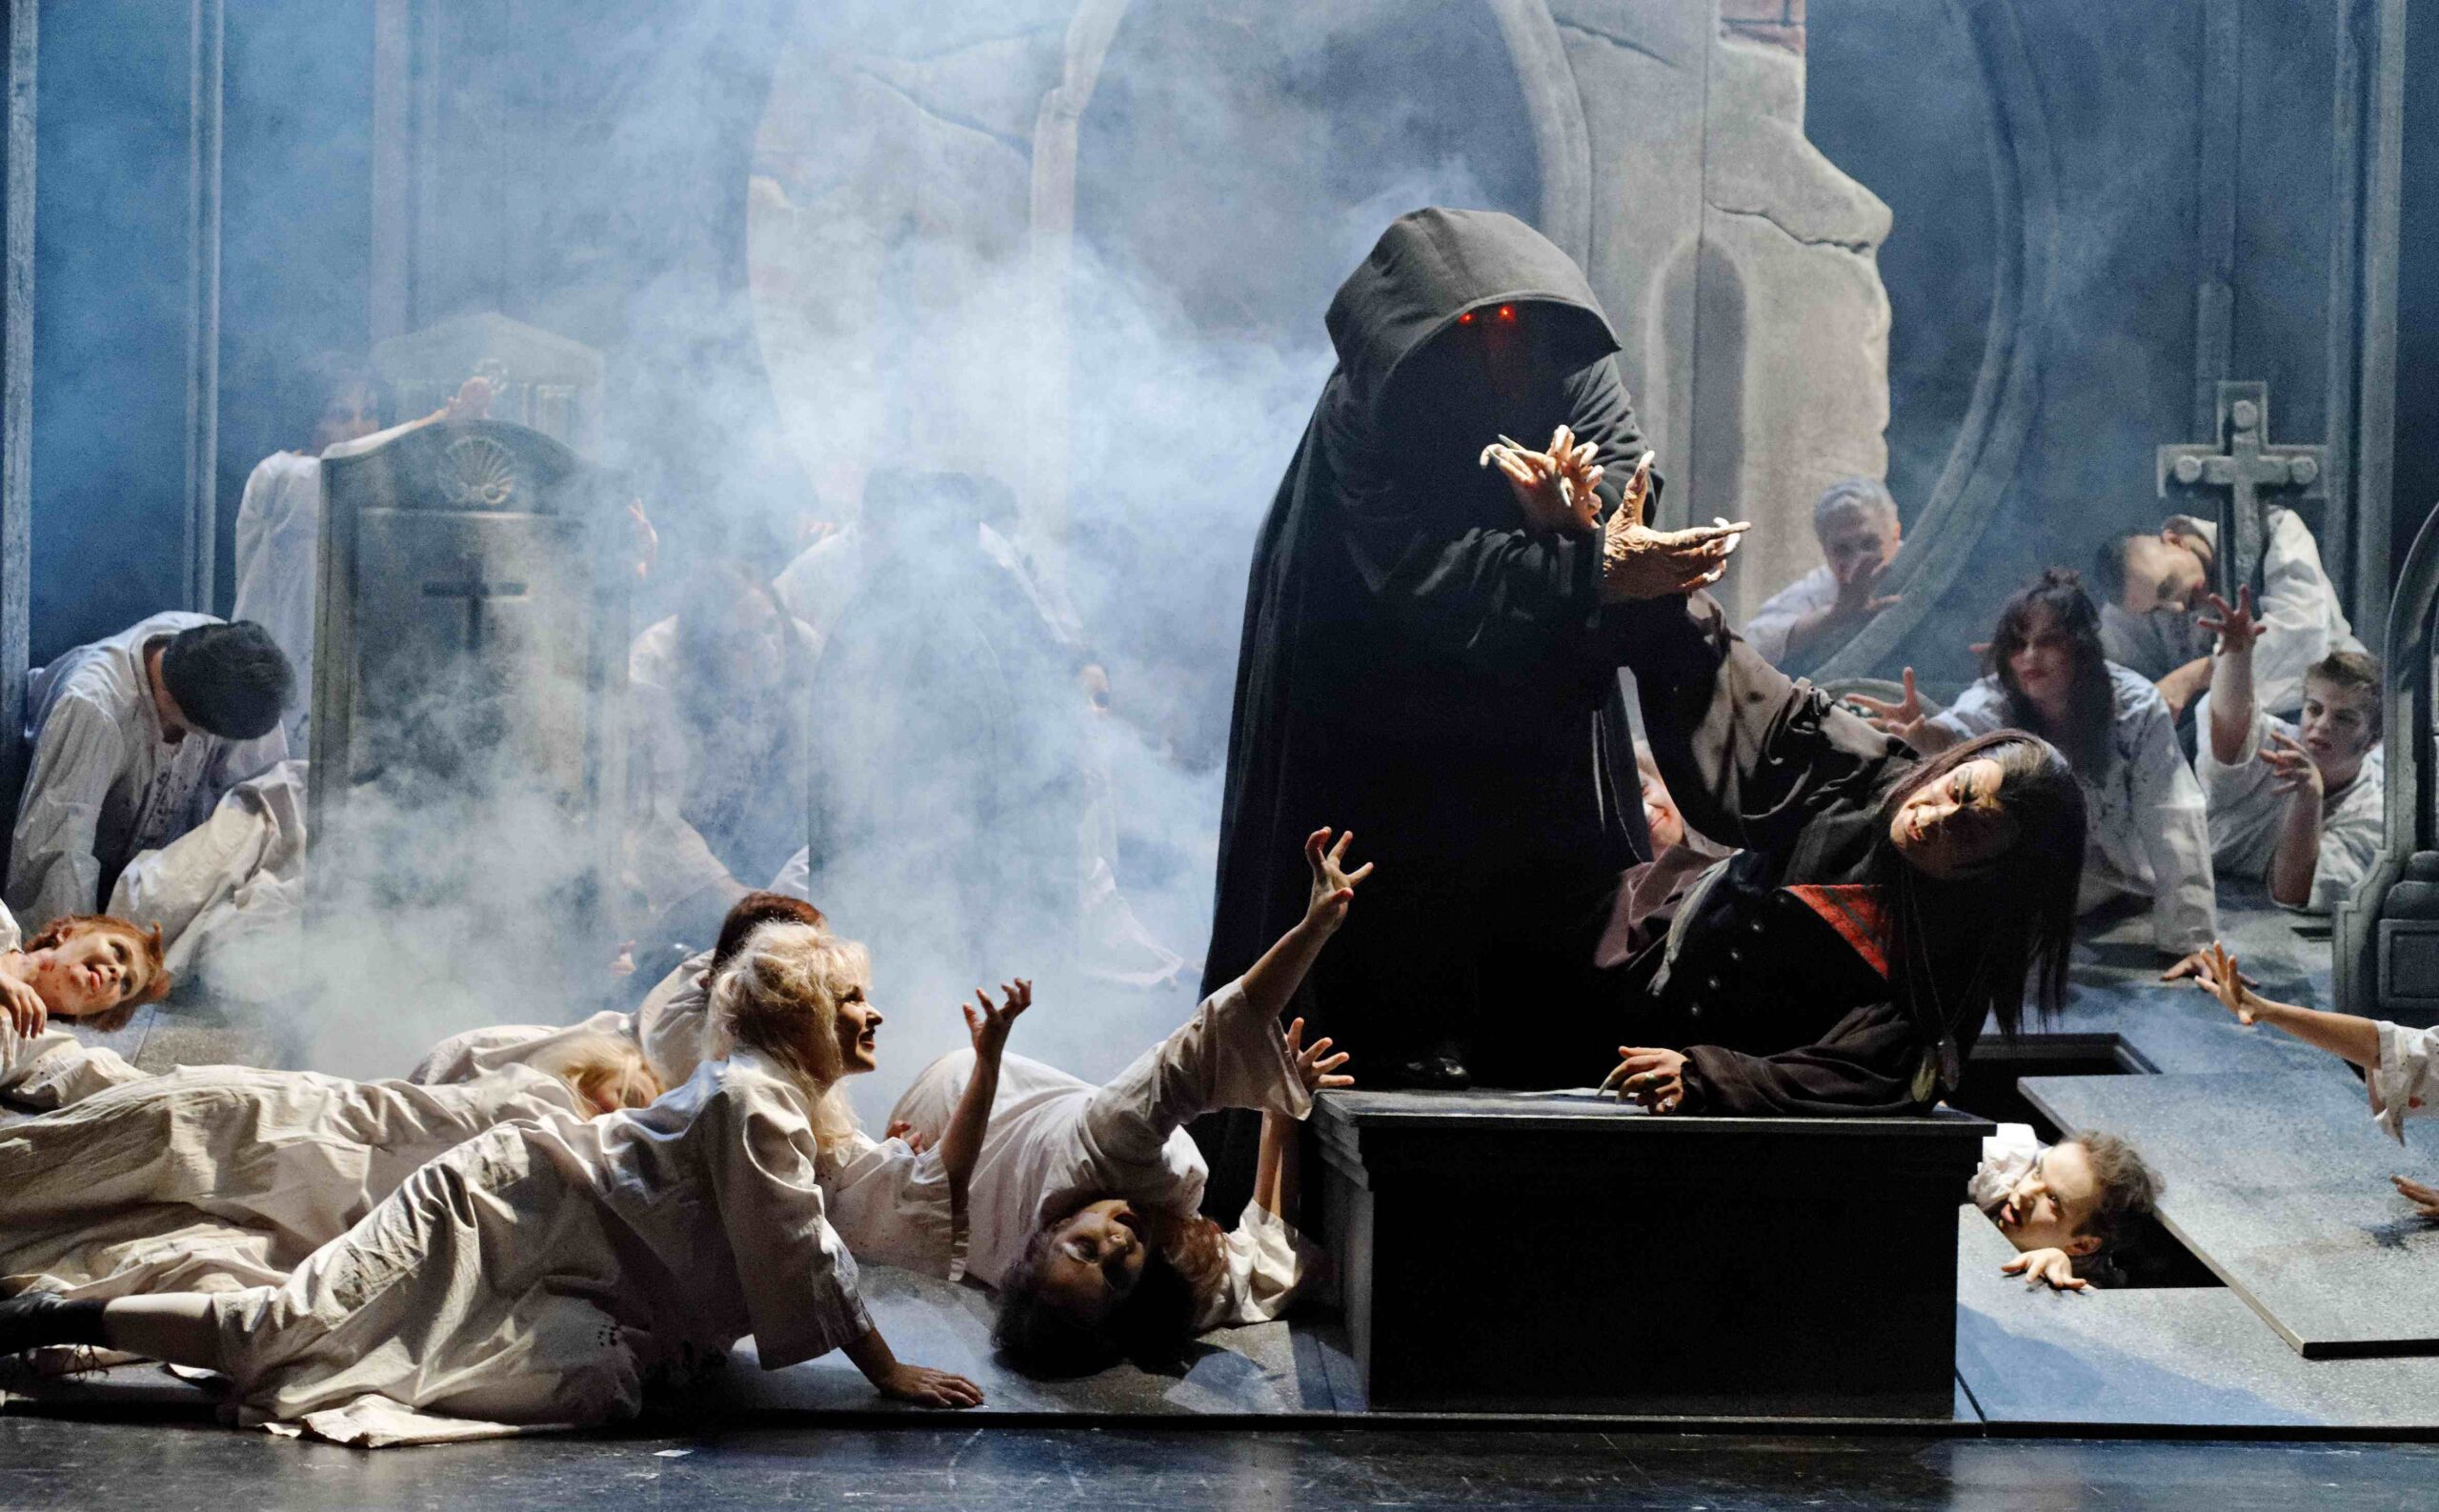 Szene aus der romantischen Oper "Der Vampyr", Inszenierung und Ausstattung stammen von Hinrich Horstkotte.